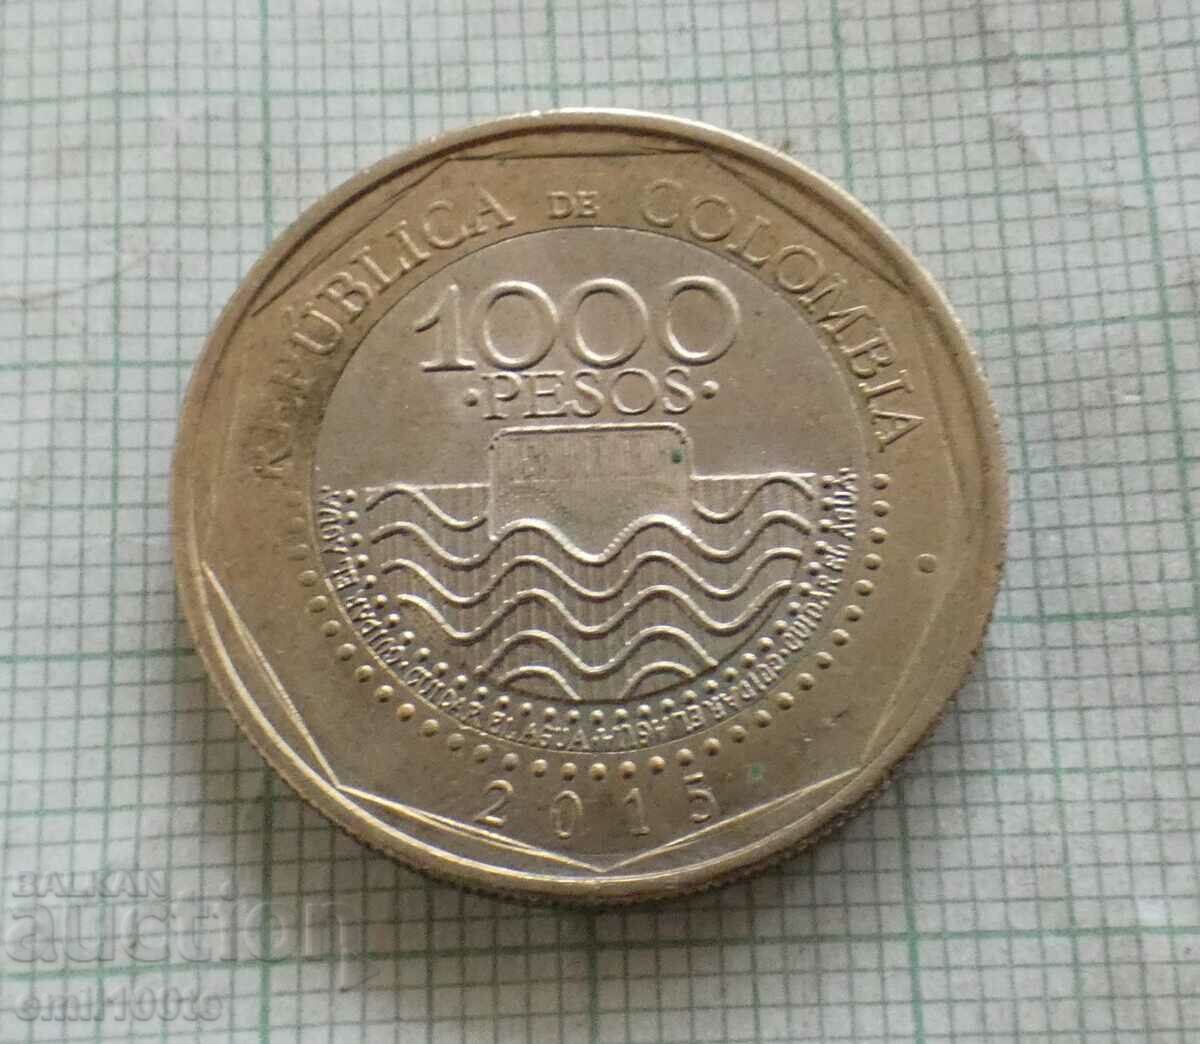 1000 de pesos 2015 Columbia